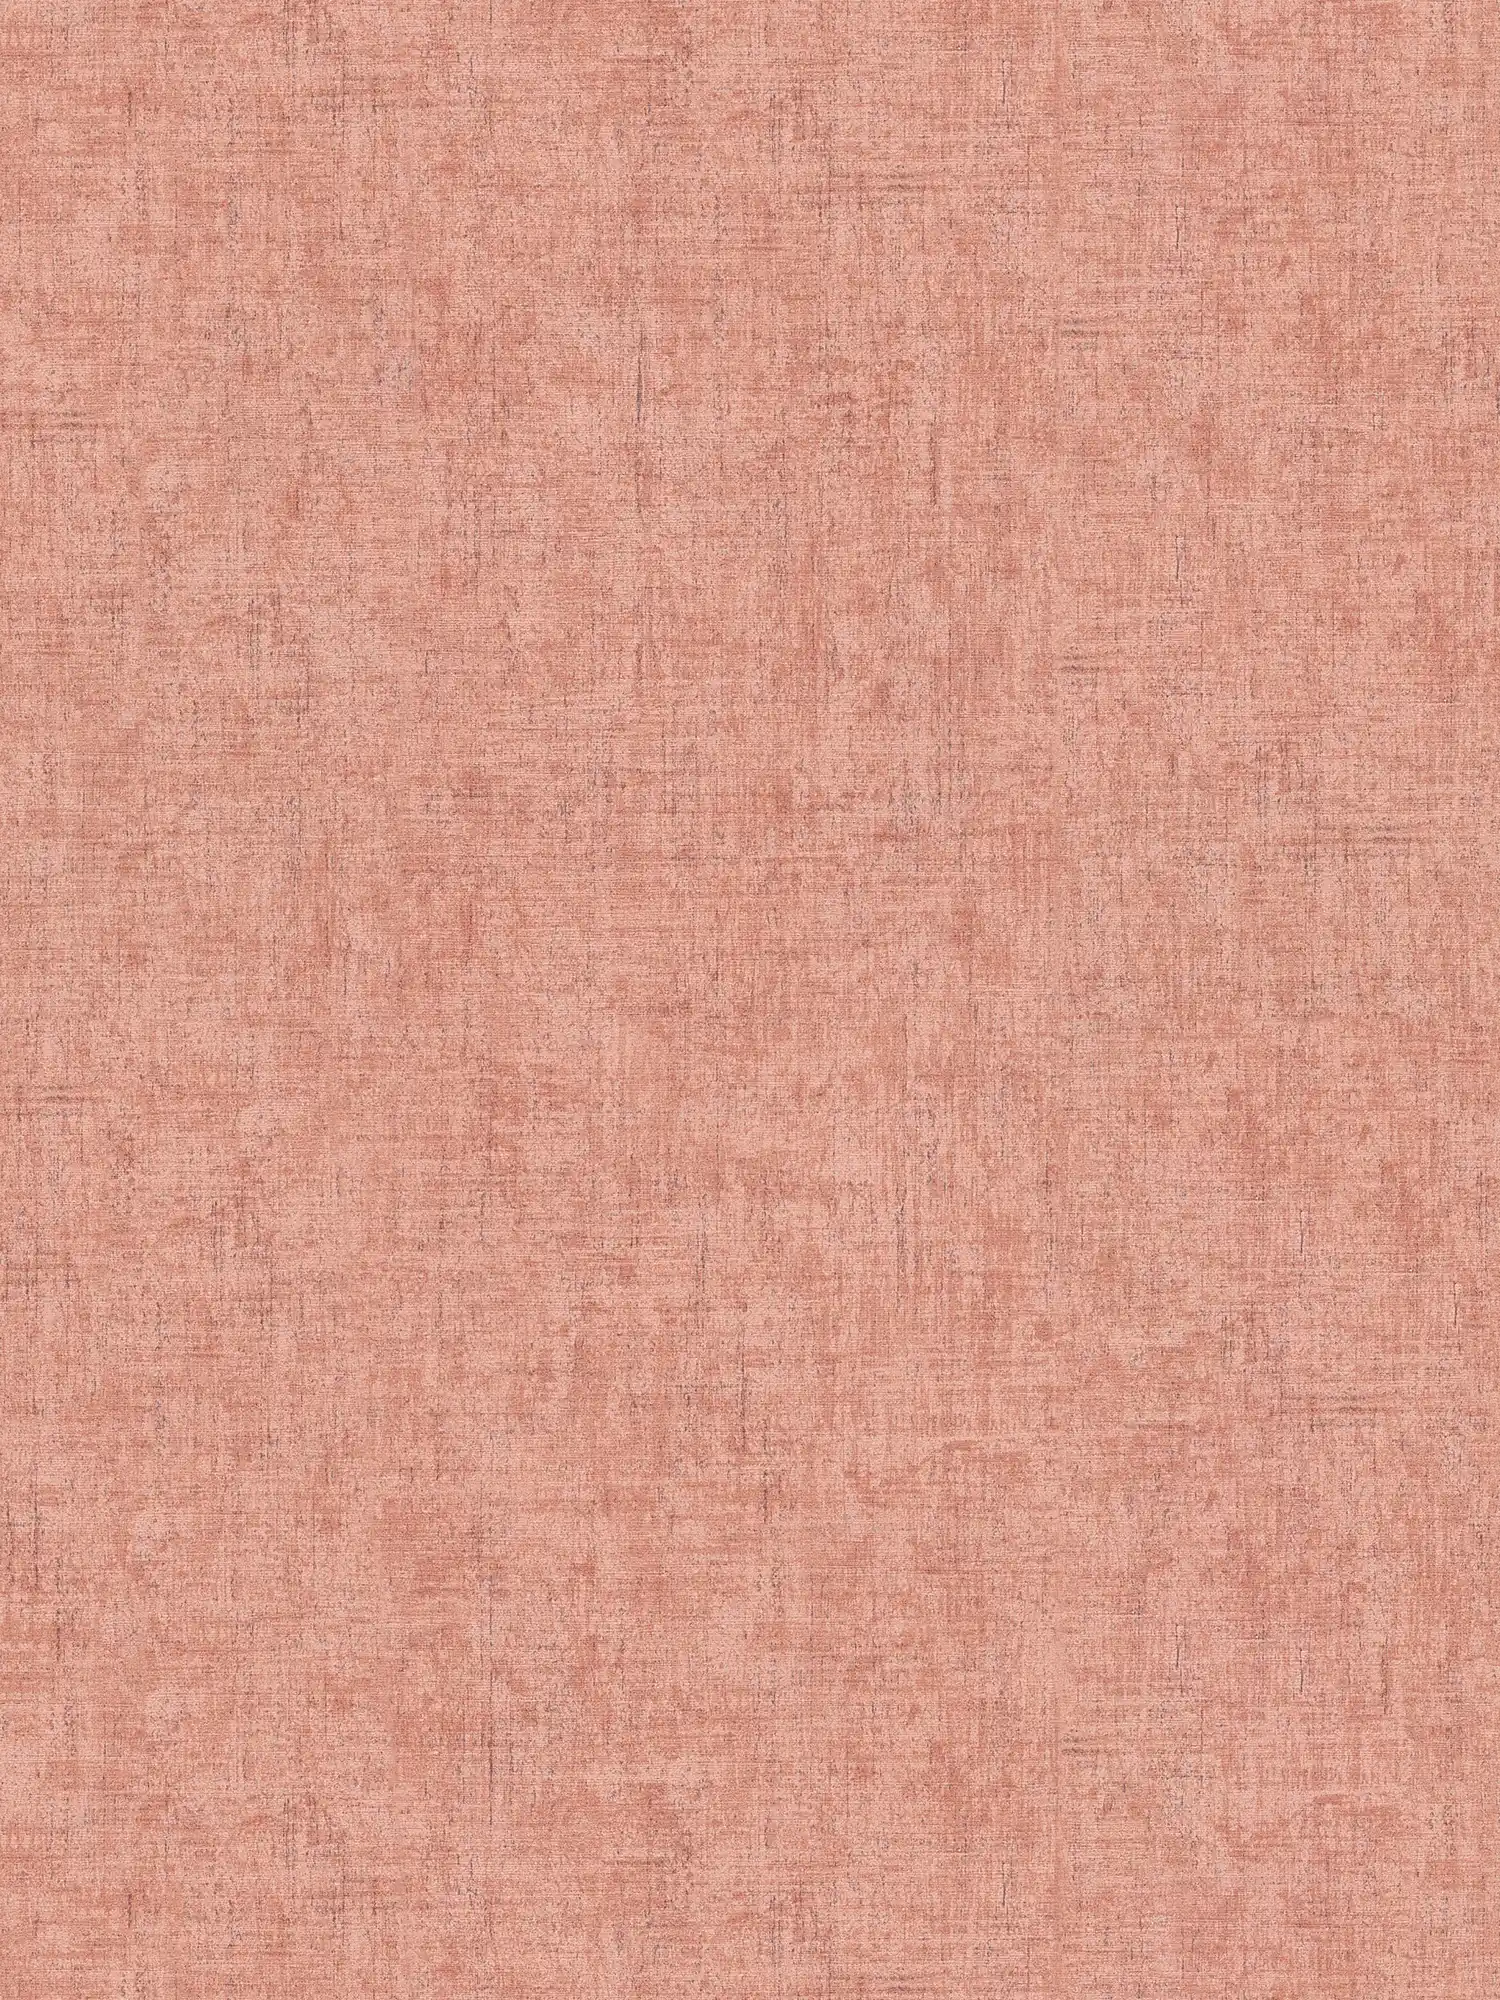 Papel pintado no tejido rosa-gris moteado con sombreado de color y textura en relieve
